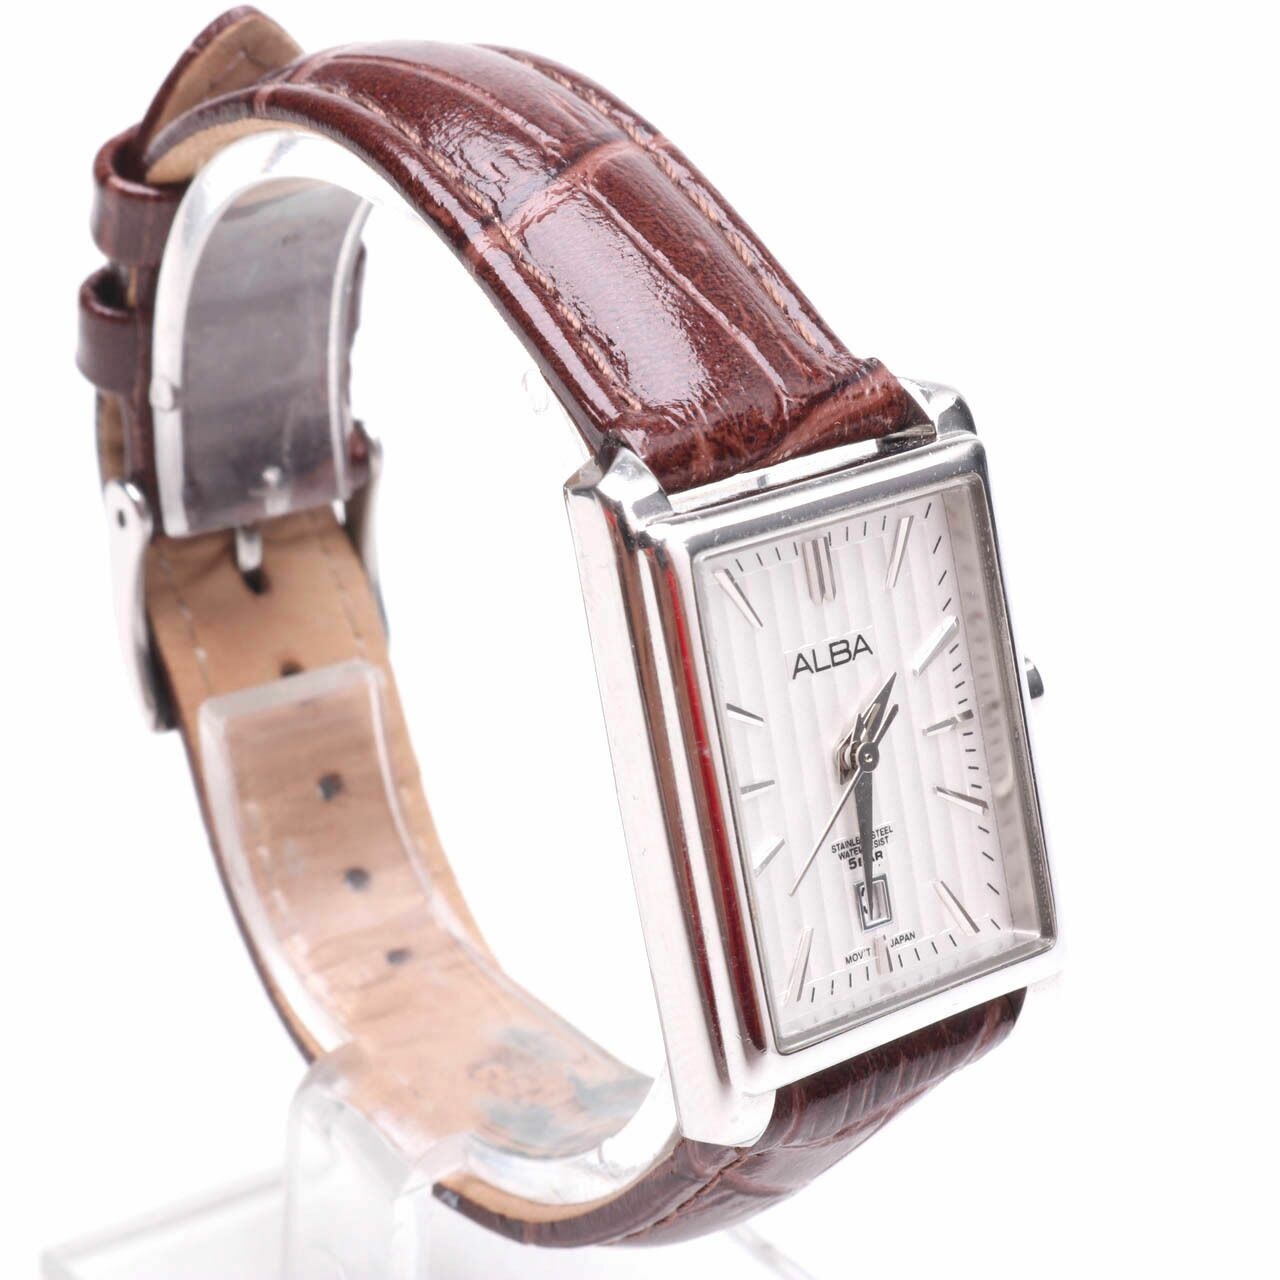 Alba Brown Watch